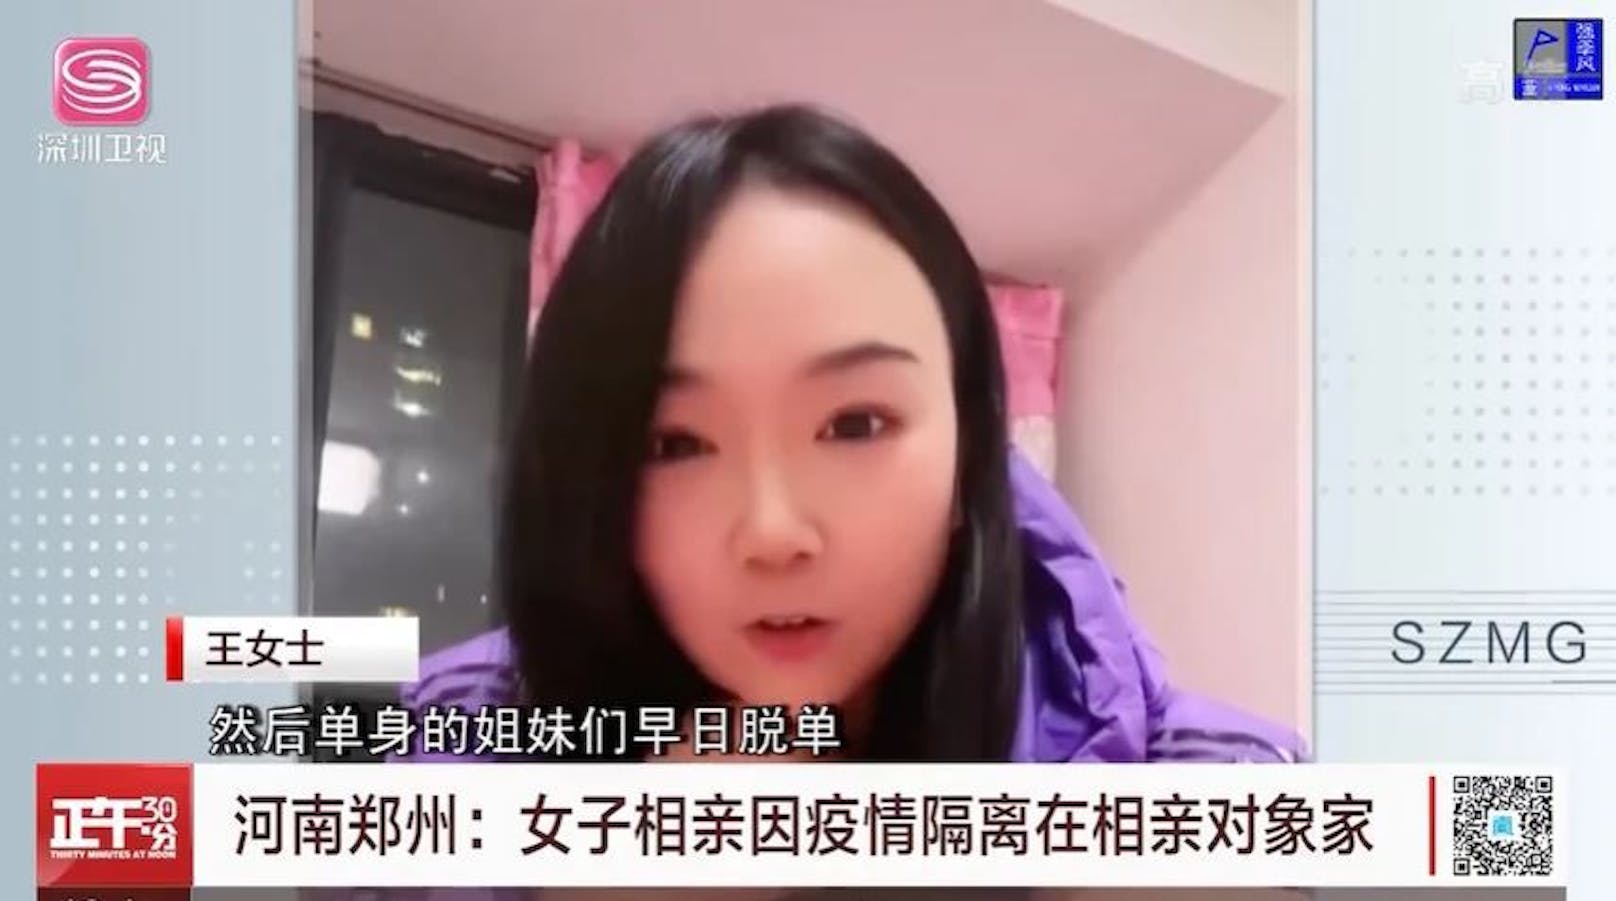 Die Chinesin Wang sitzt wegen eines plötzlichen Lockdown bei ihrem Blind Date fest.